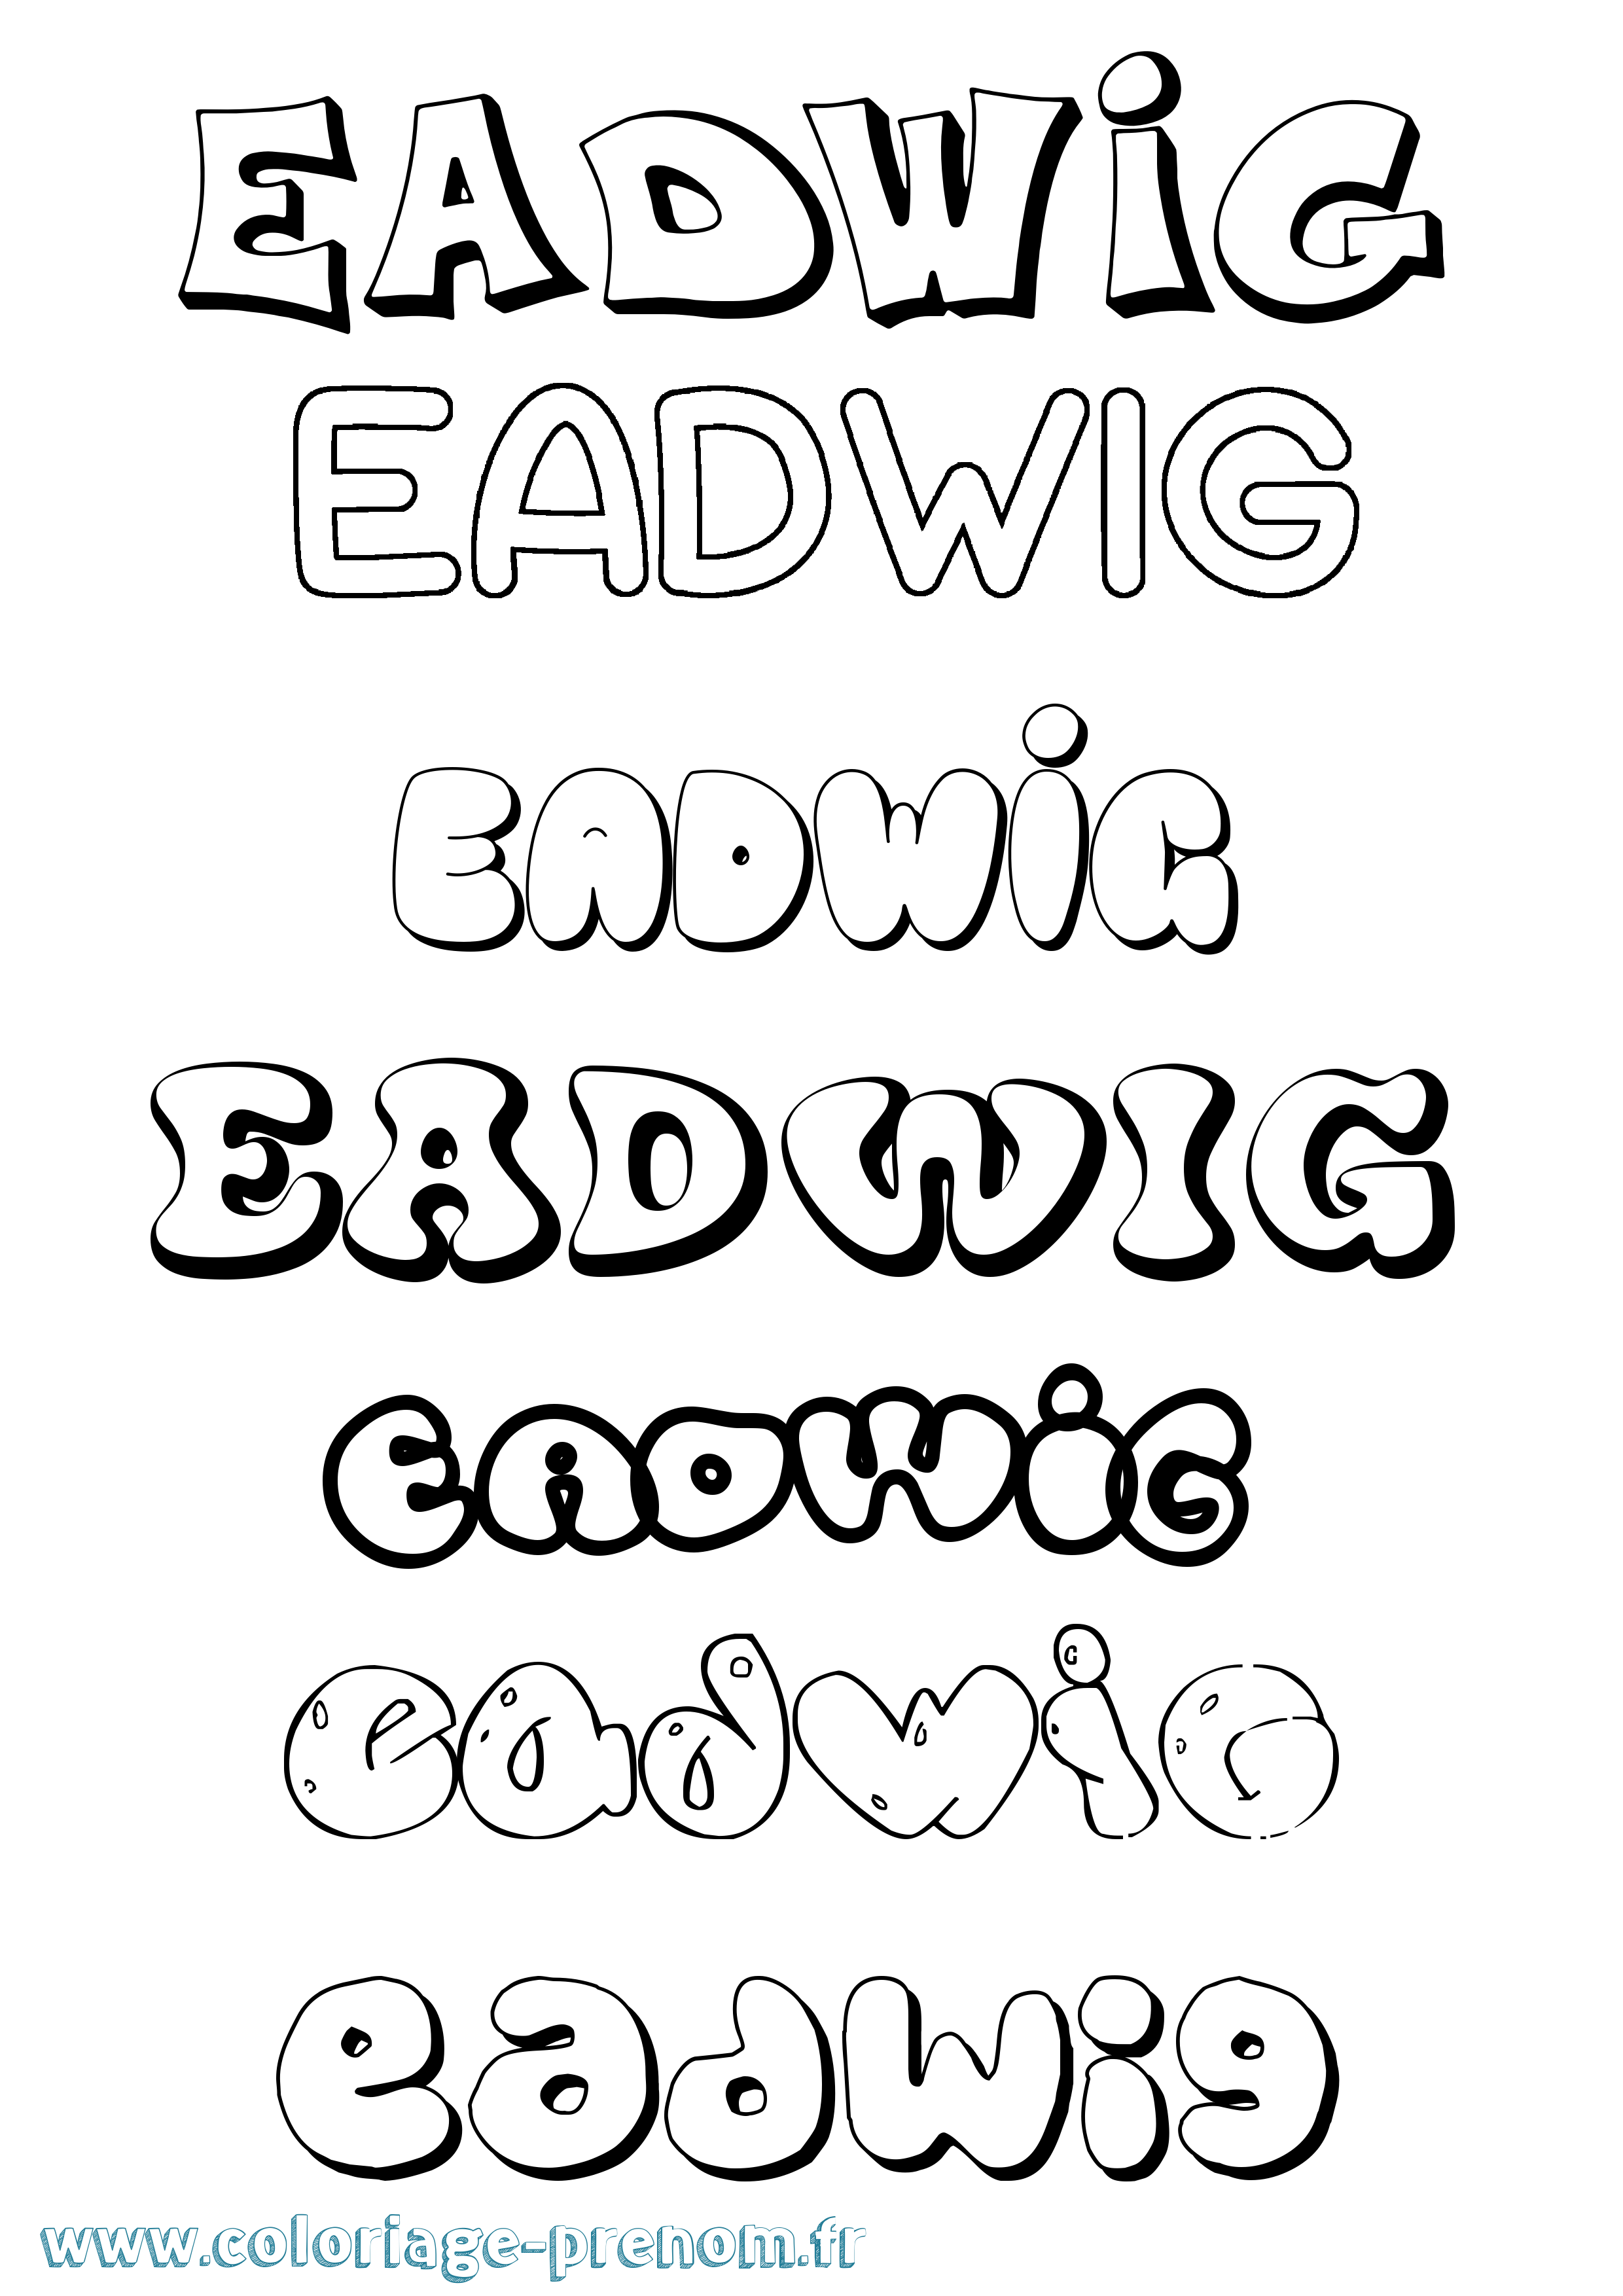 Coloriage prénom Eadwig Bubble